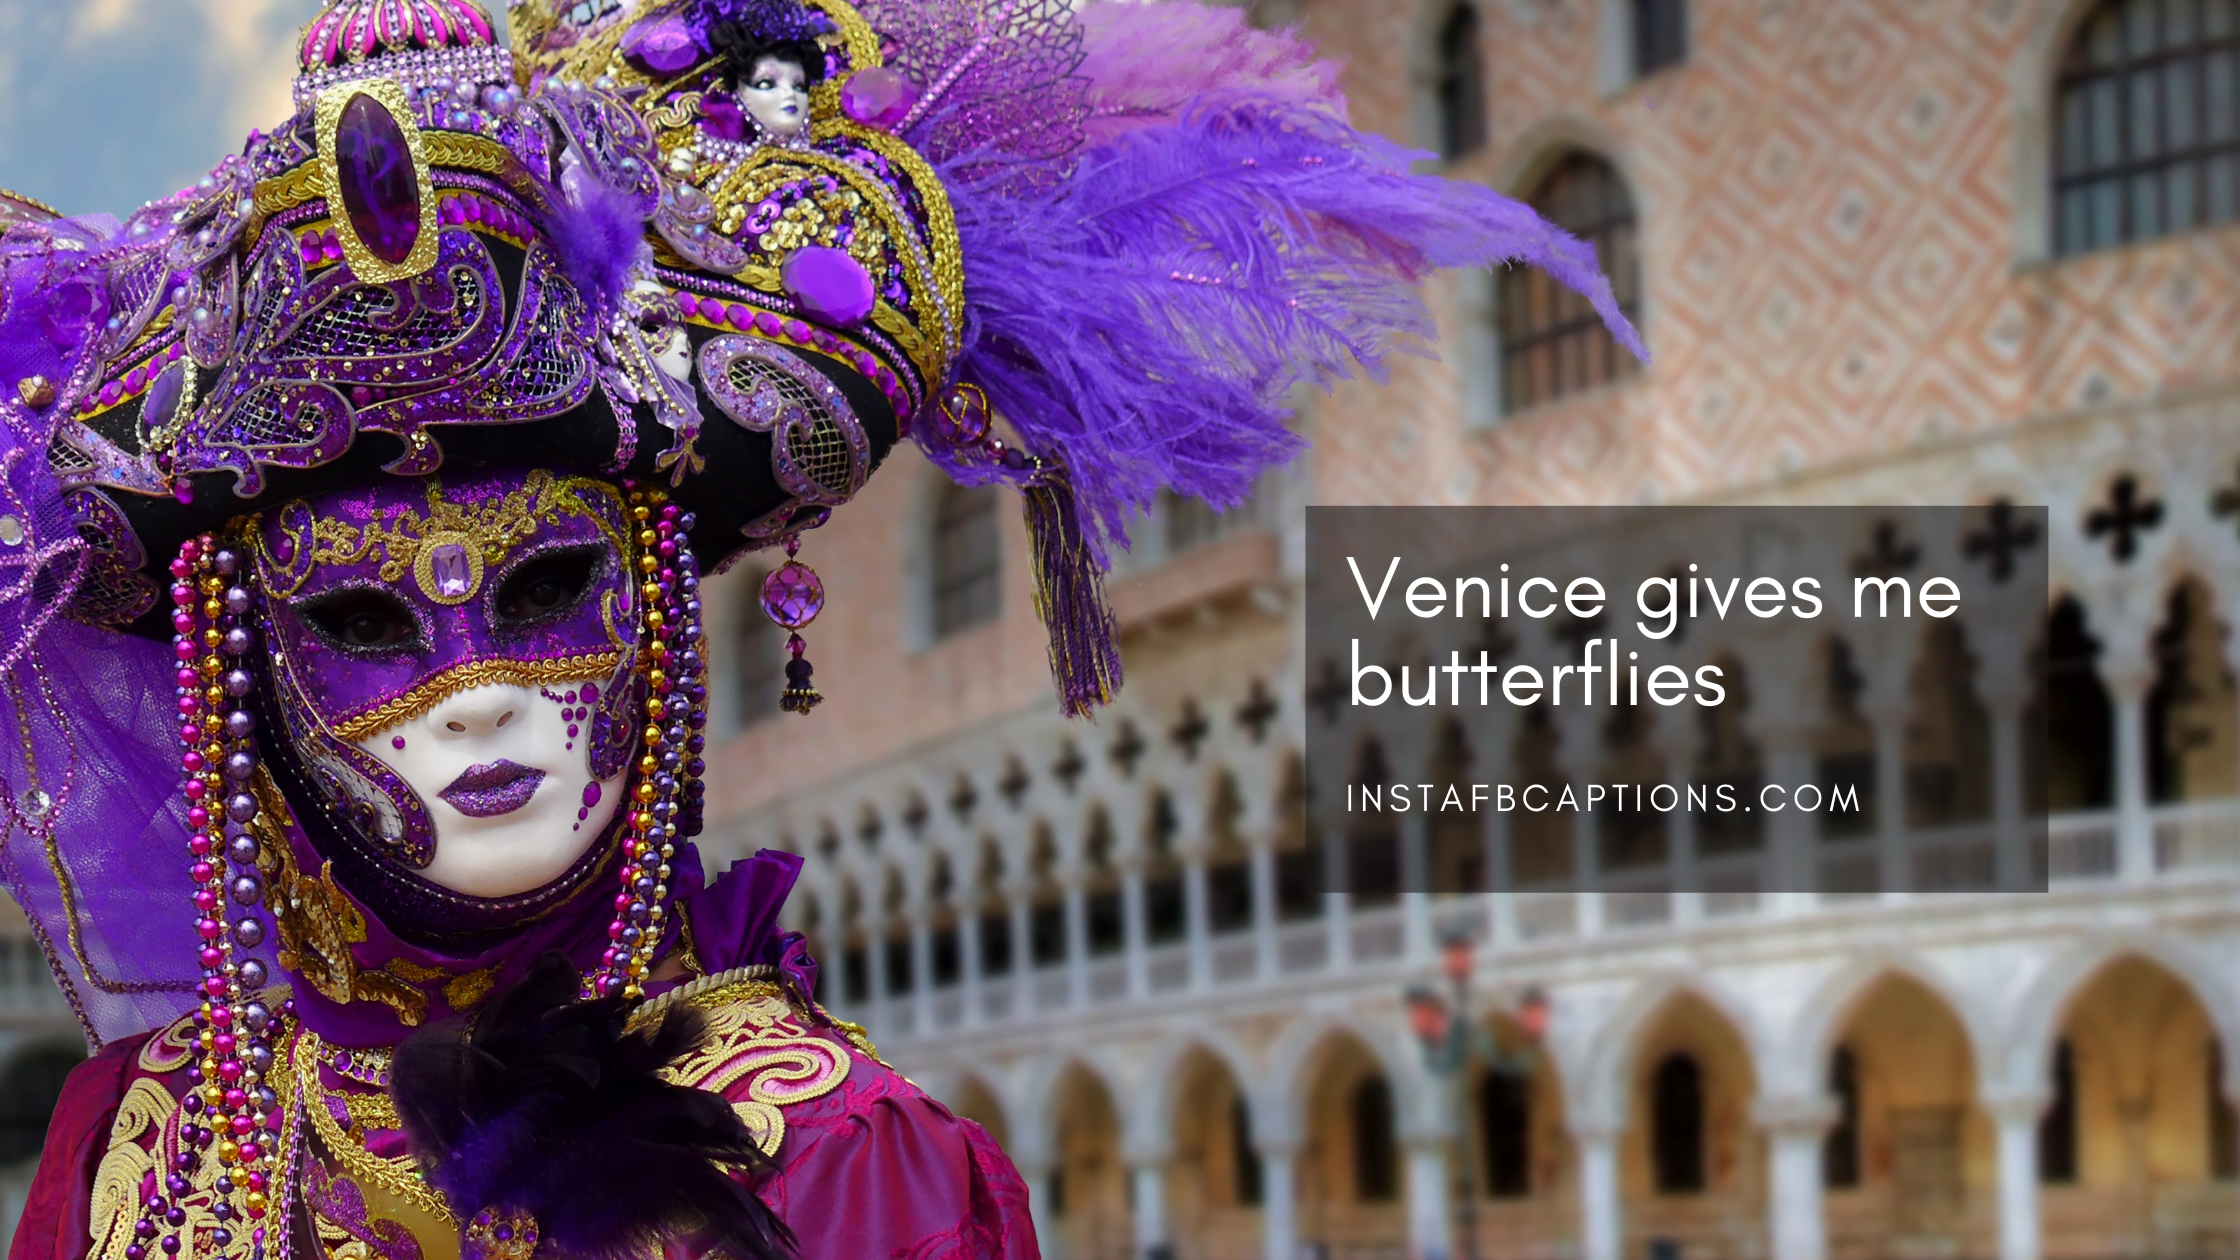 Best Venice Instagram Captions  - Best Venice Instagram Captions  - 85 Venice Instagram Captions for Beach Pics 2022